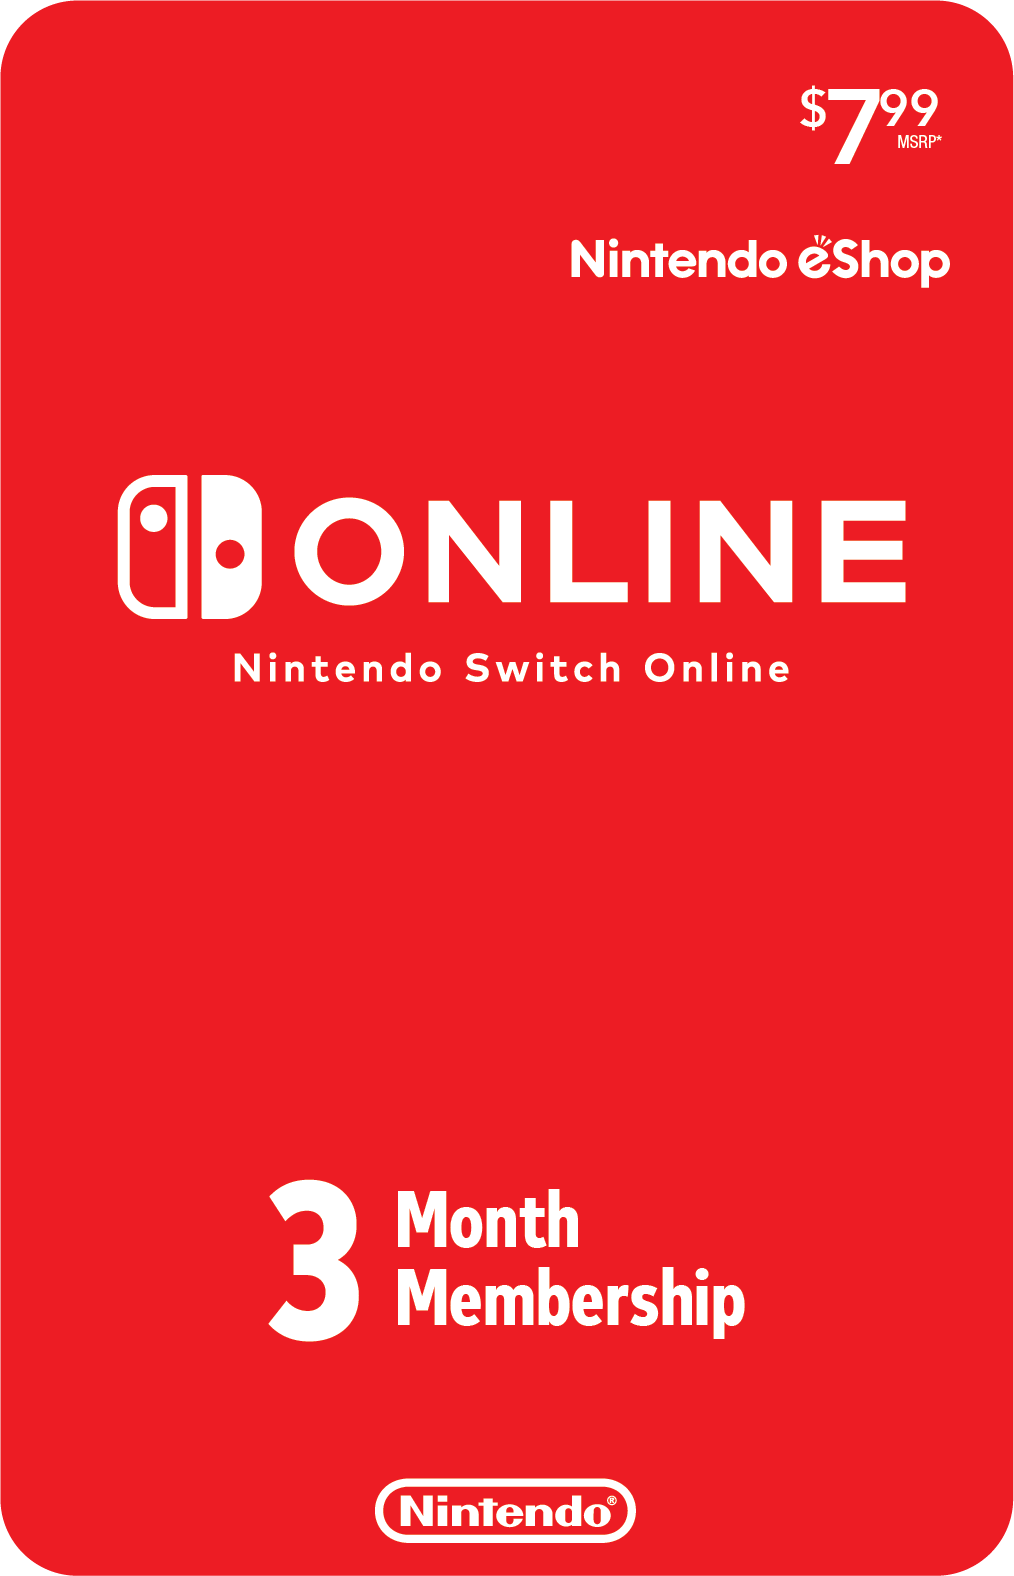 Nintendo Switch Bundle with Mario Kart 8 Deluxe - image 2 of 8